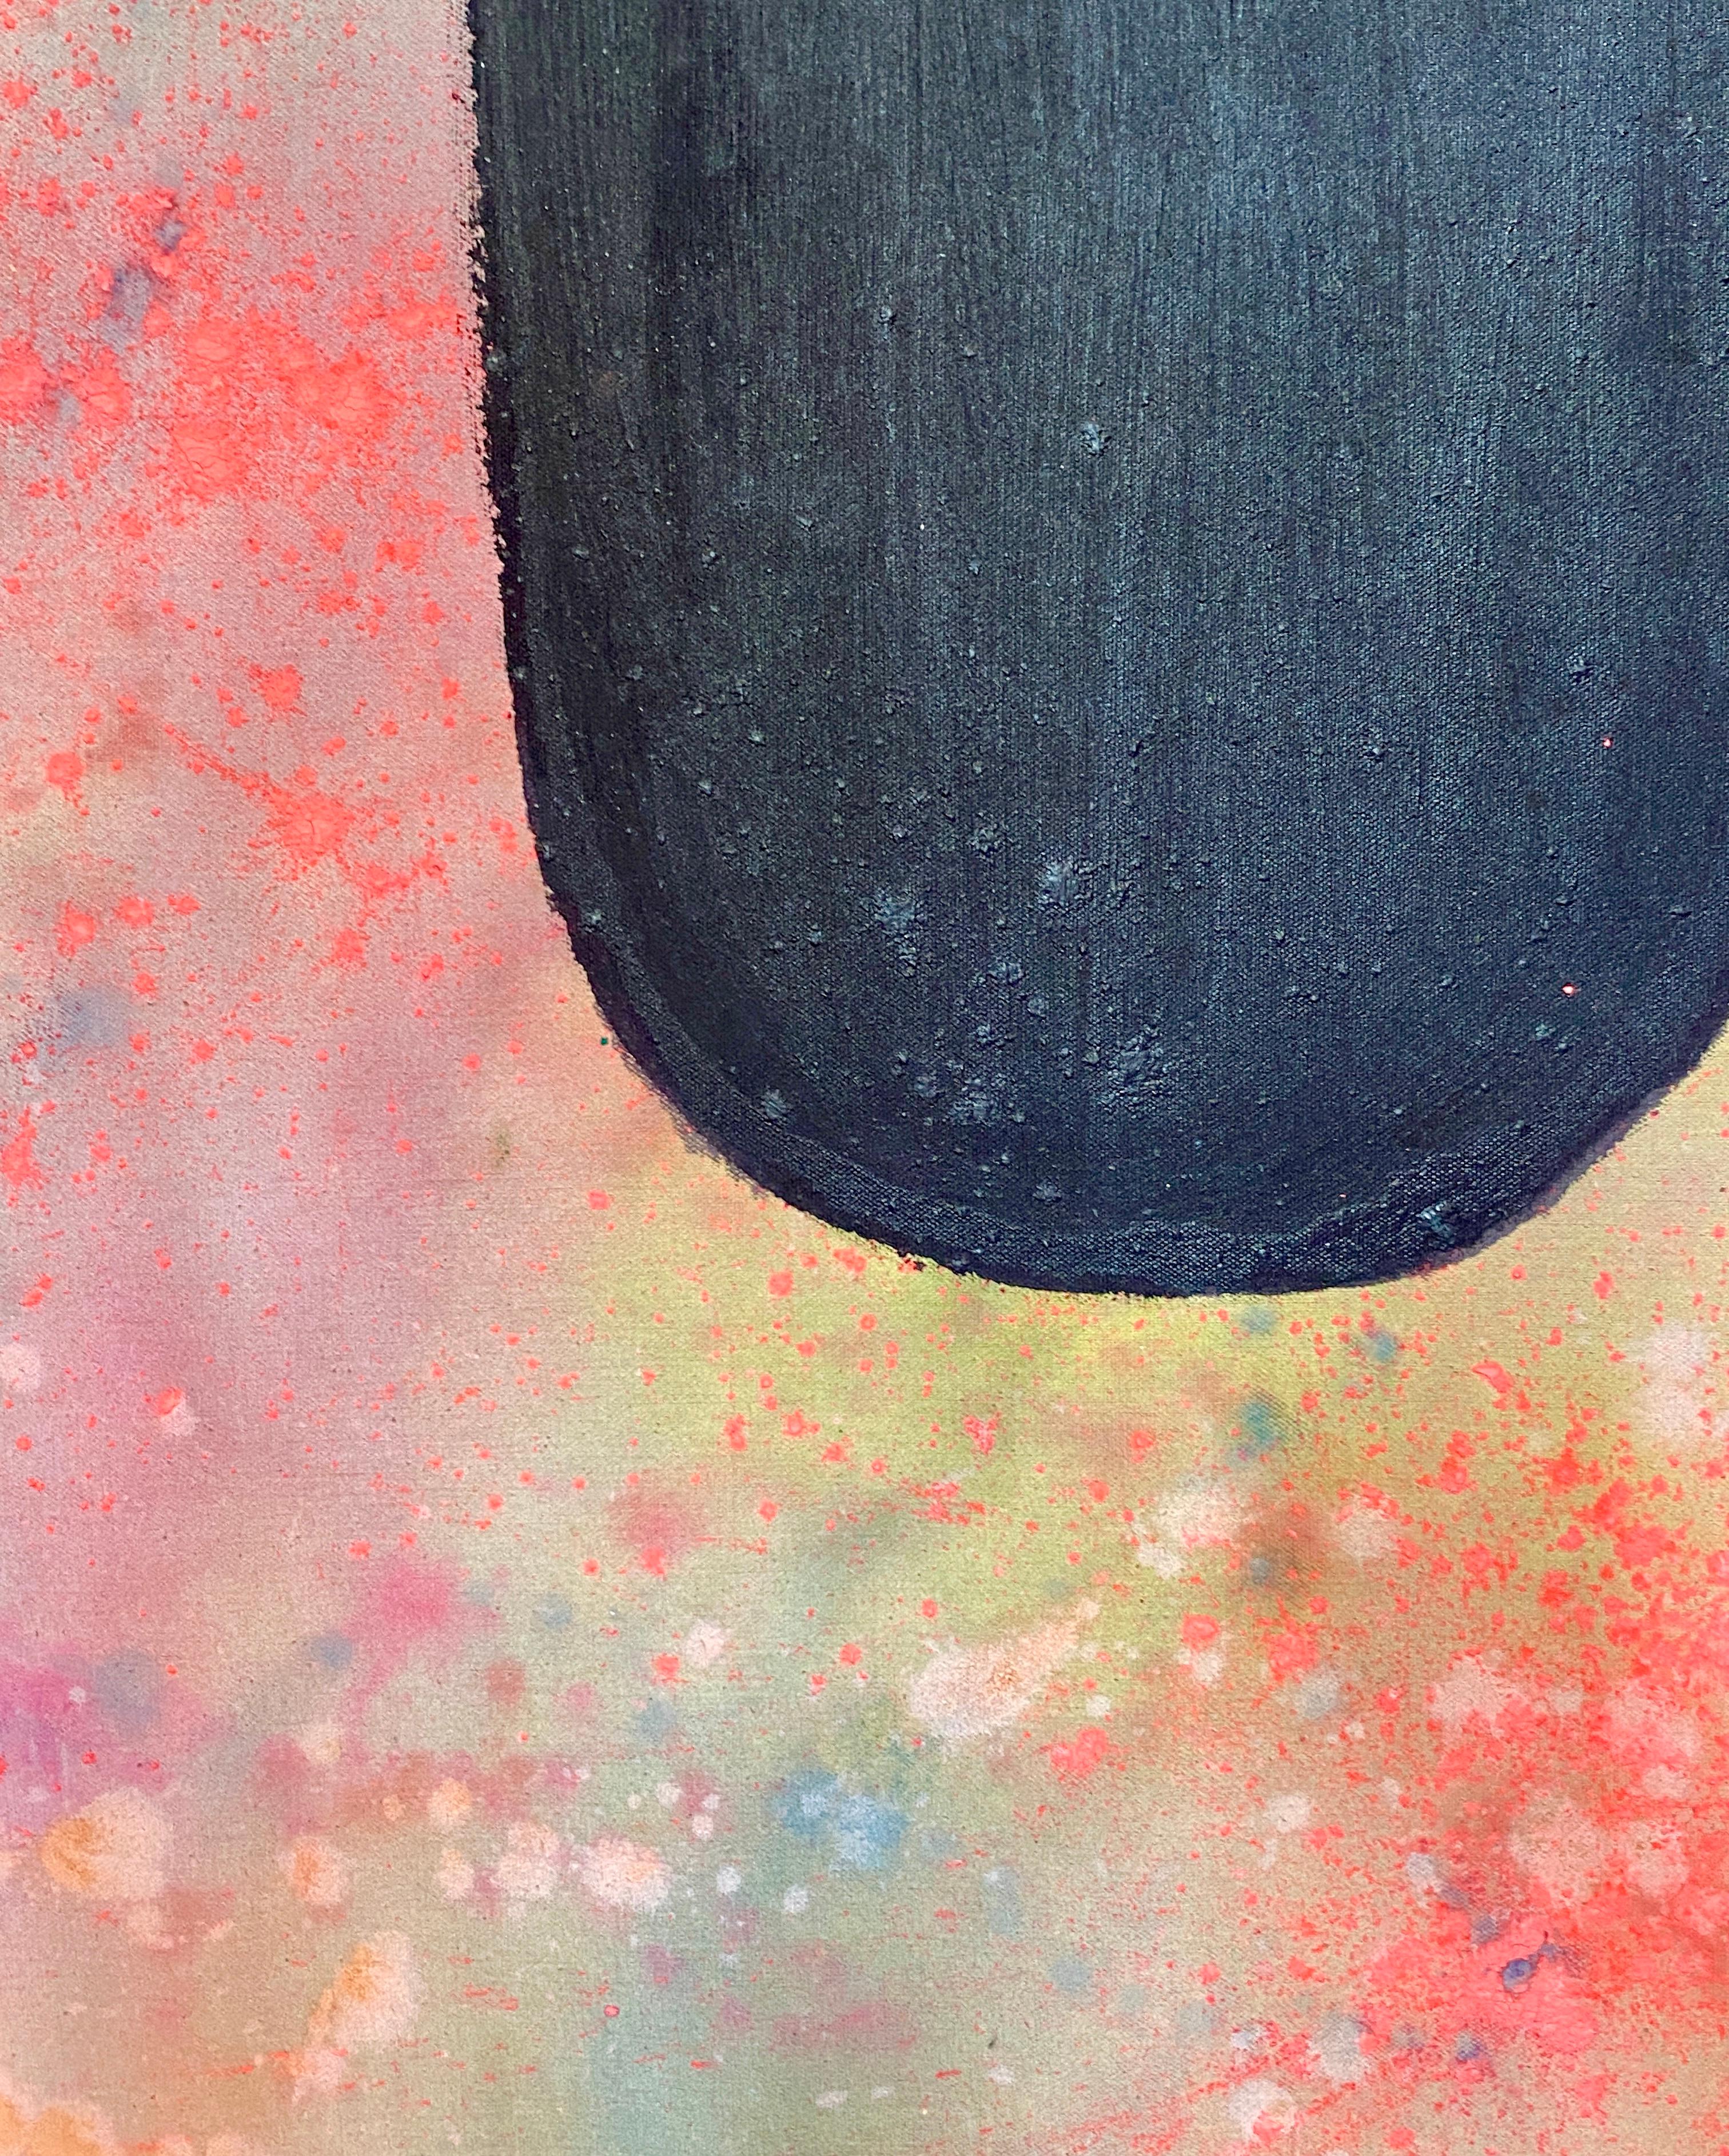 Peinture en poudre Tantra de Holi n°4 - Peinture à teinture tantrique abstraite colorée - Colorfield Painting par Elisa Niva